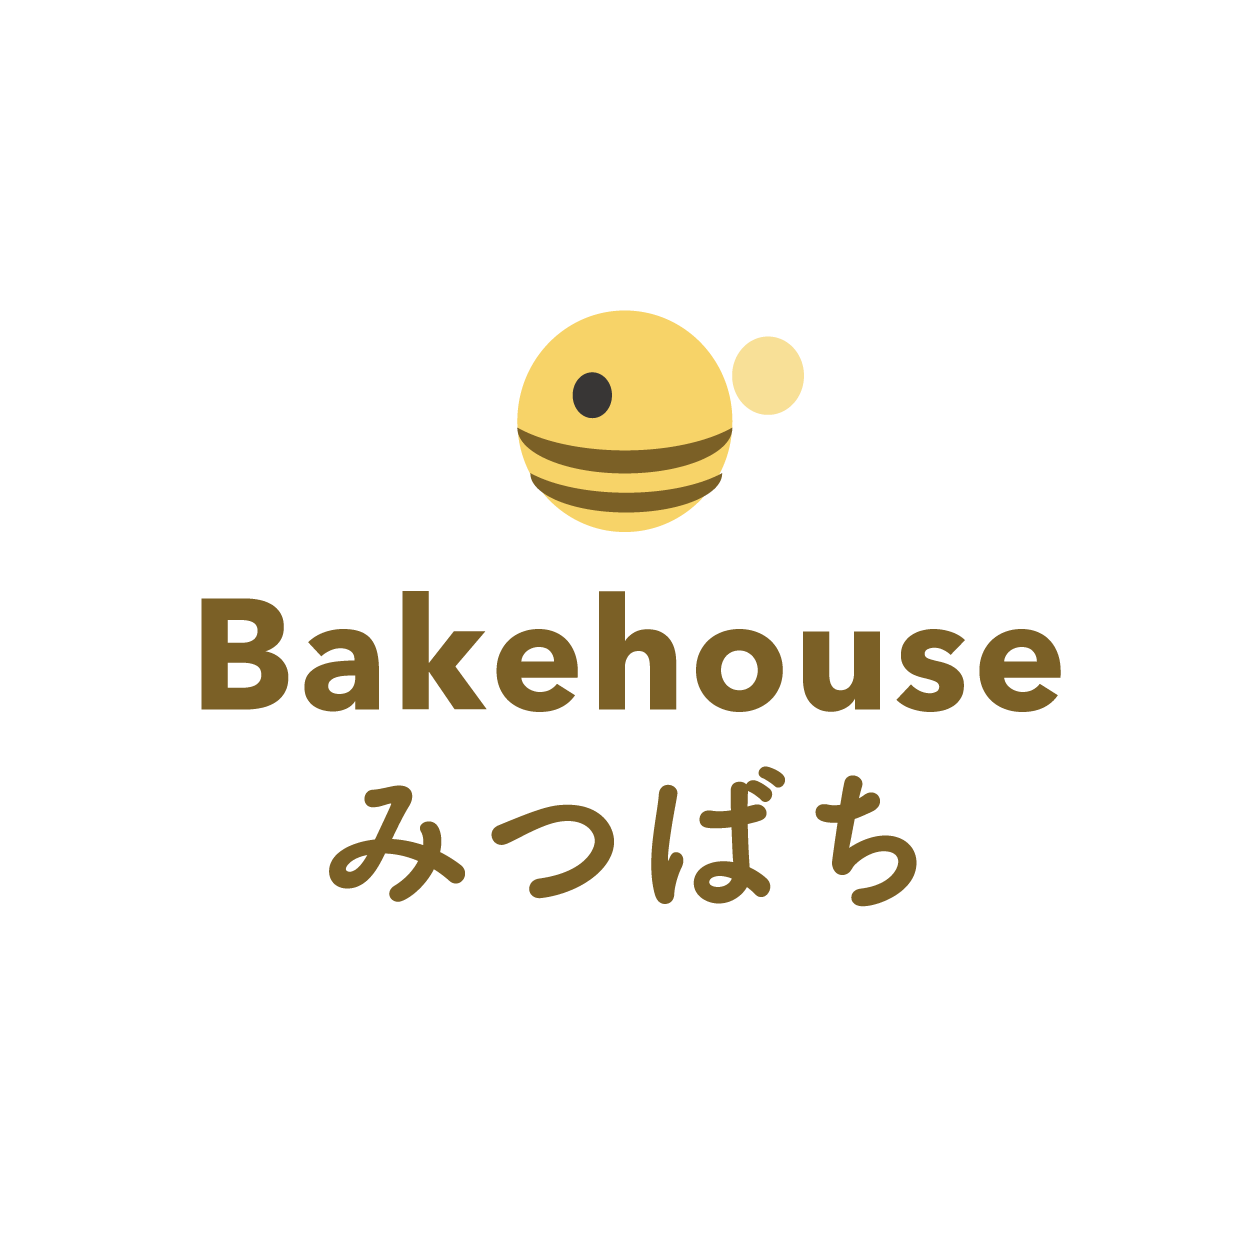 パン屋さん ジョアン でマリトッツォ Bakehouse みつばち 広島 海田 パンと焼き菓子